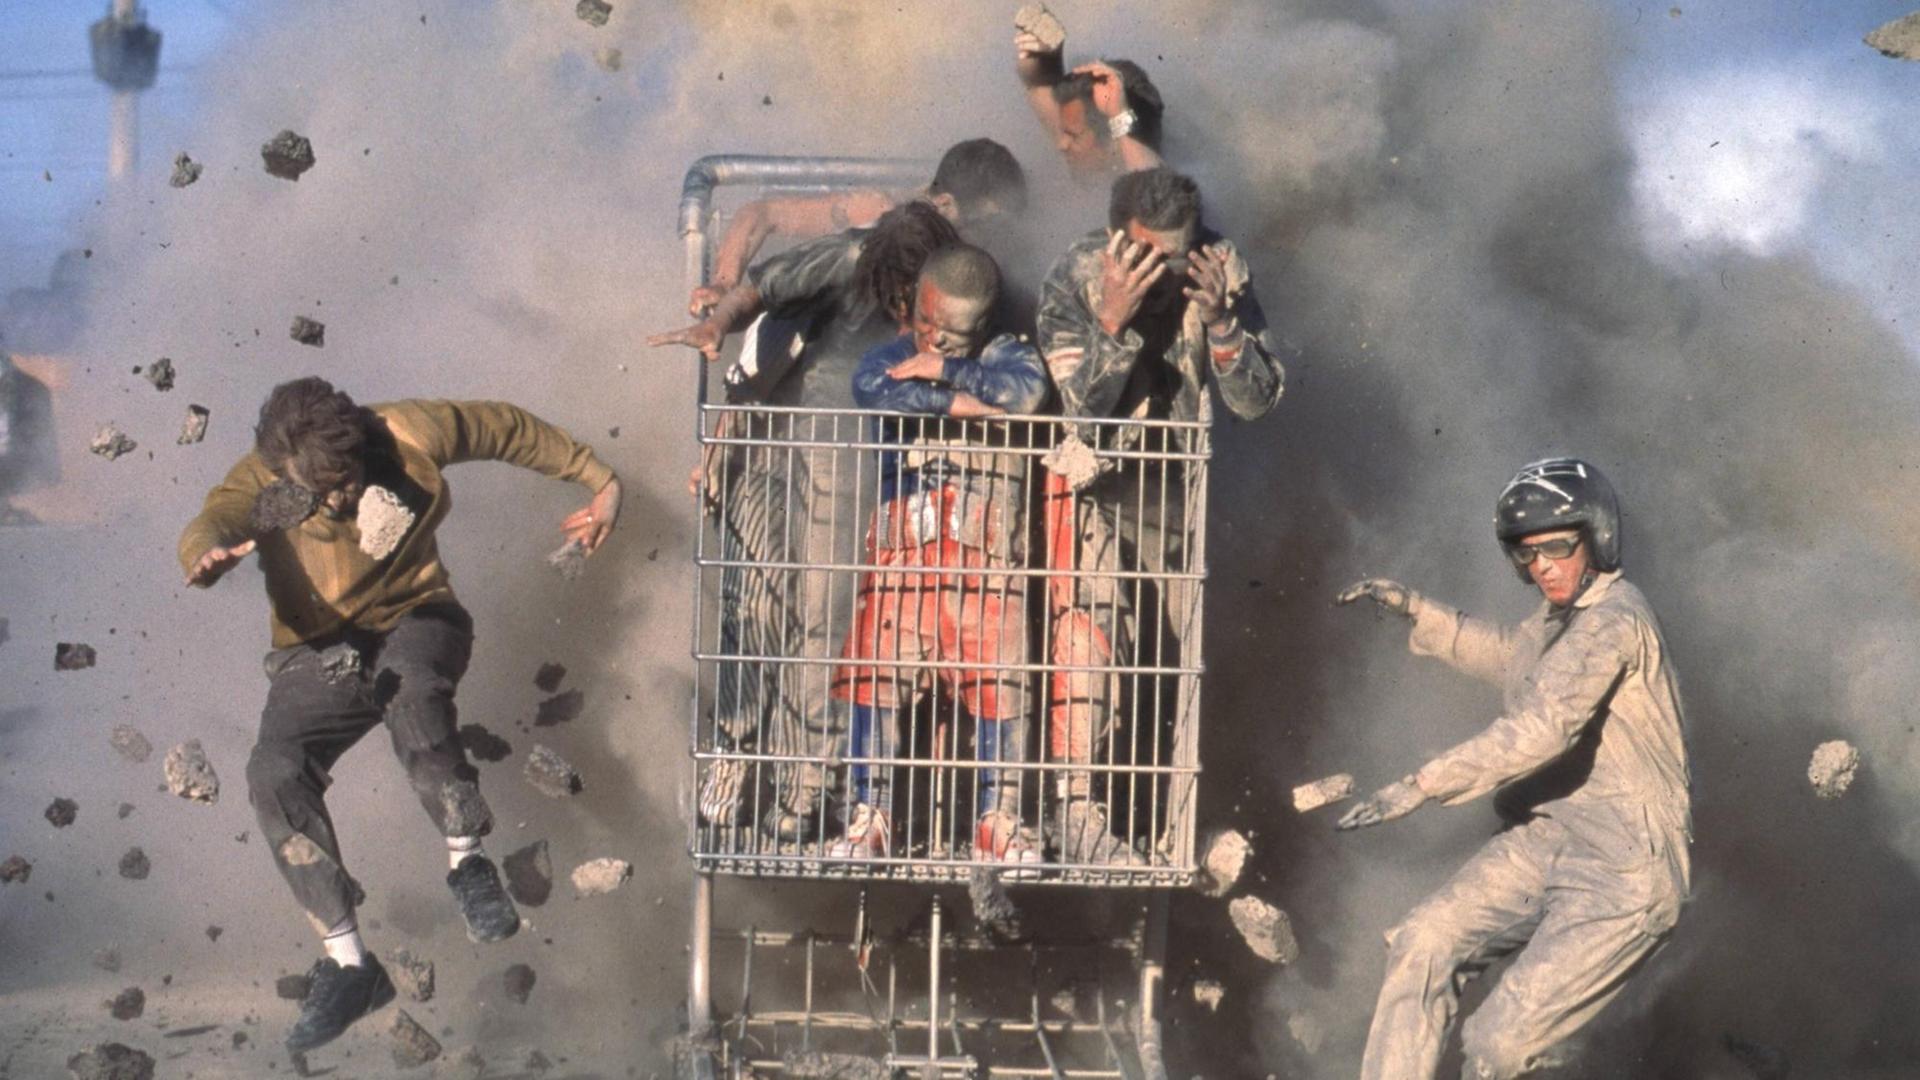 Stuntman fahren in einem vollbesetzten Einkaufswagen, während im Hintergrund etwas explodiert.